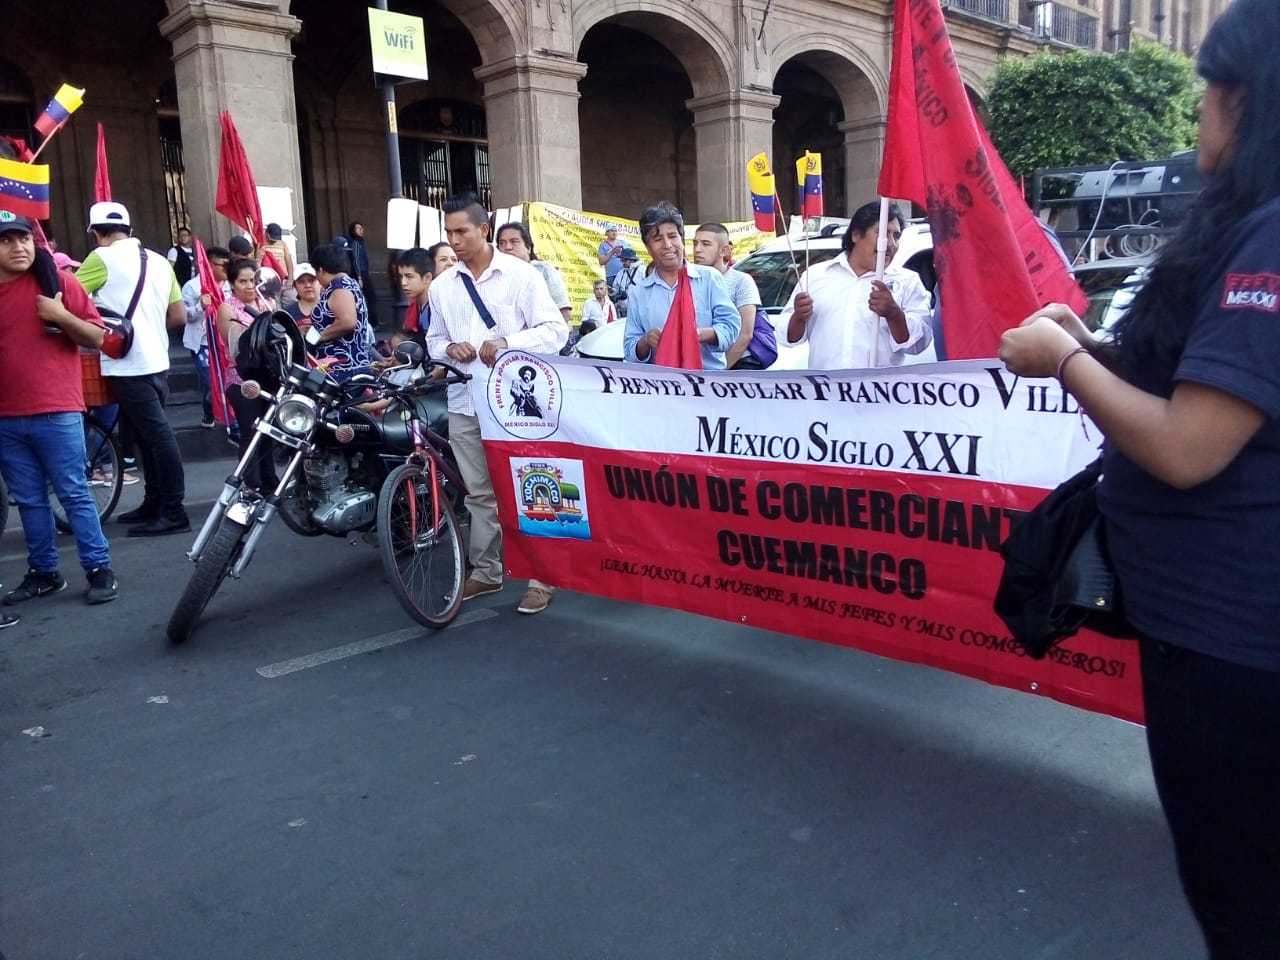 Marchan en CDMX contra la “invertención yanki” en Venezuela